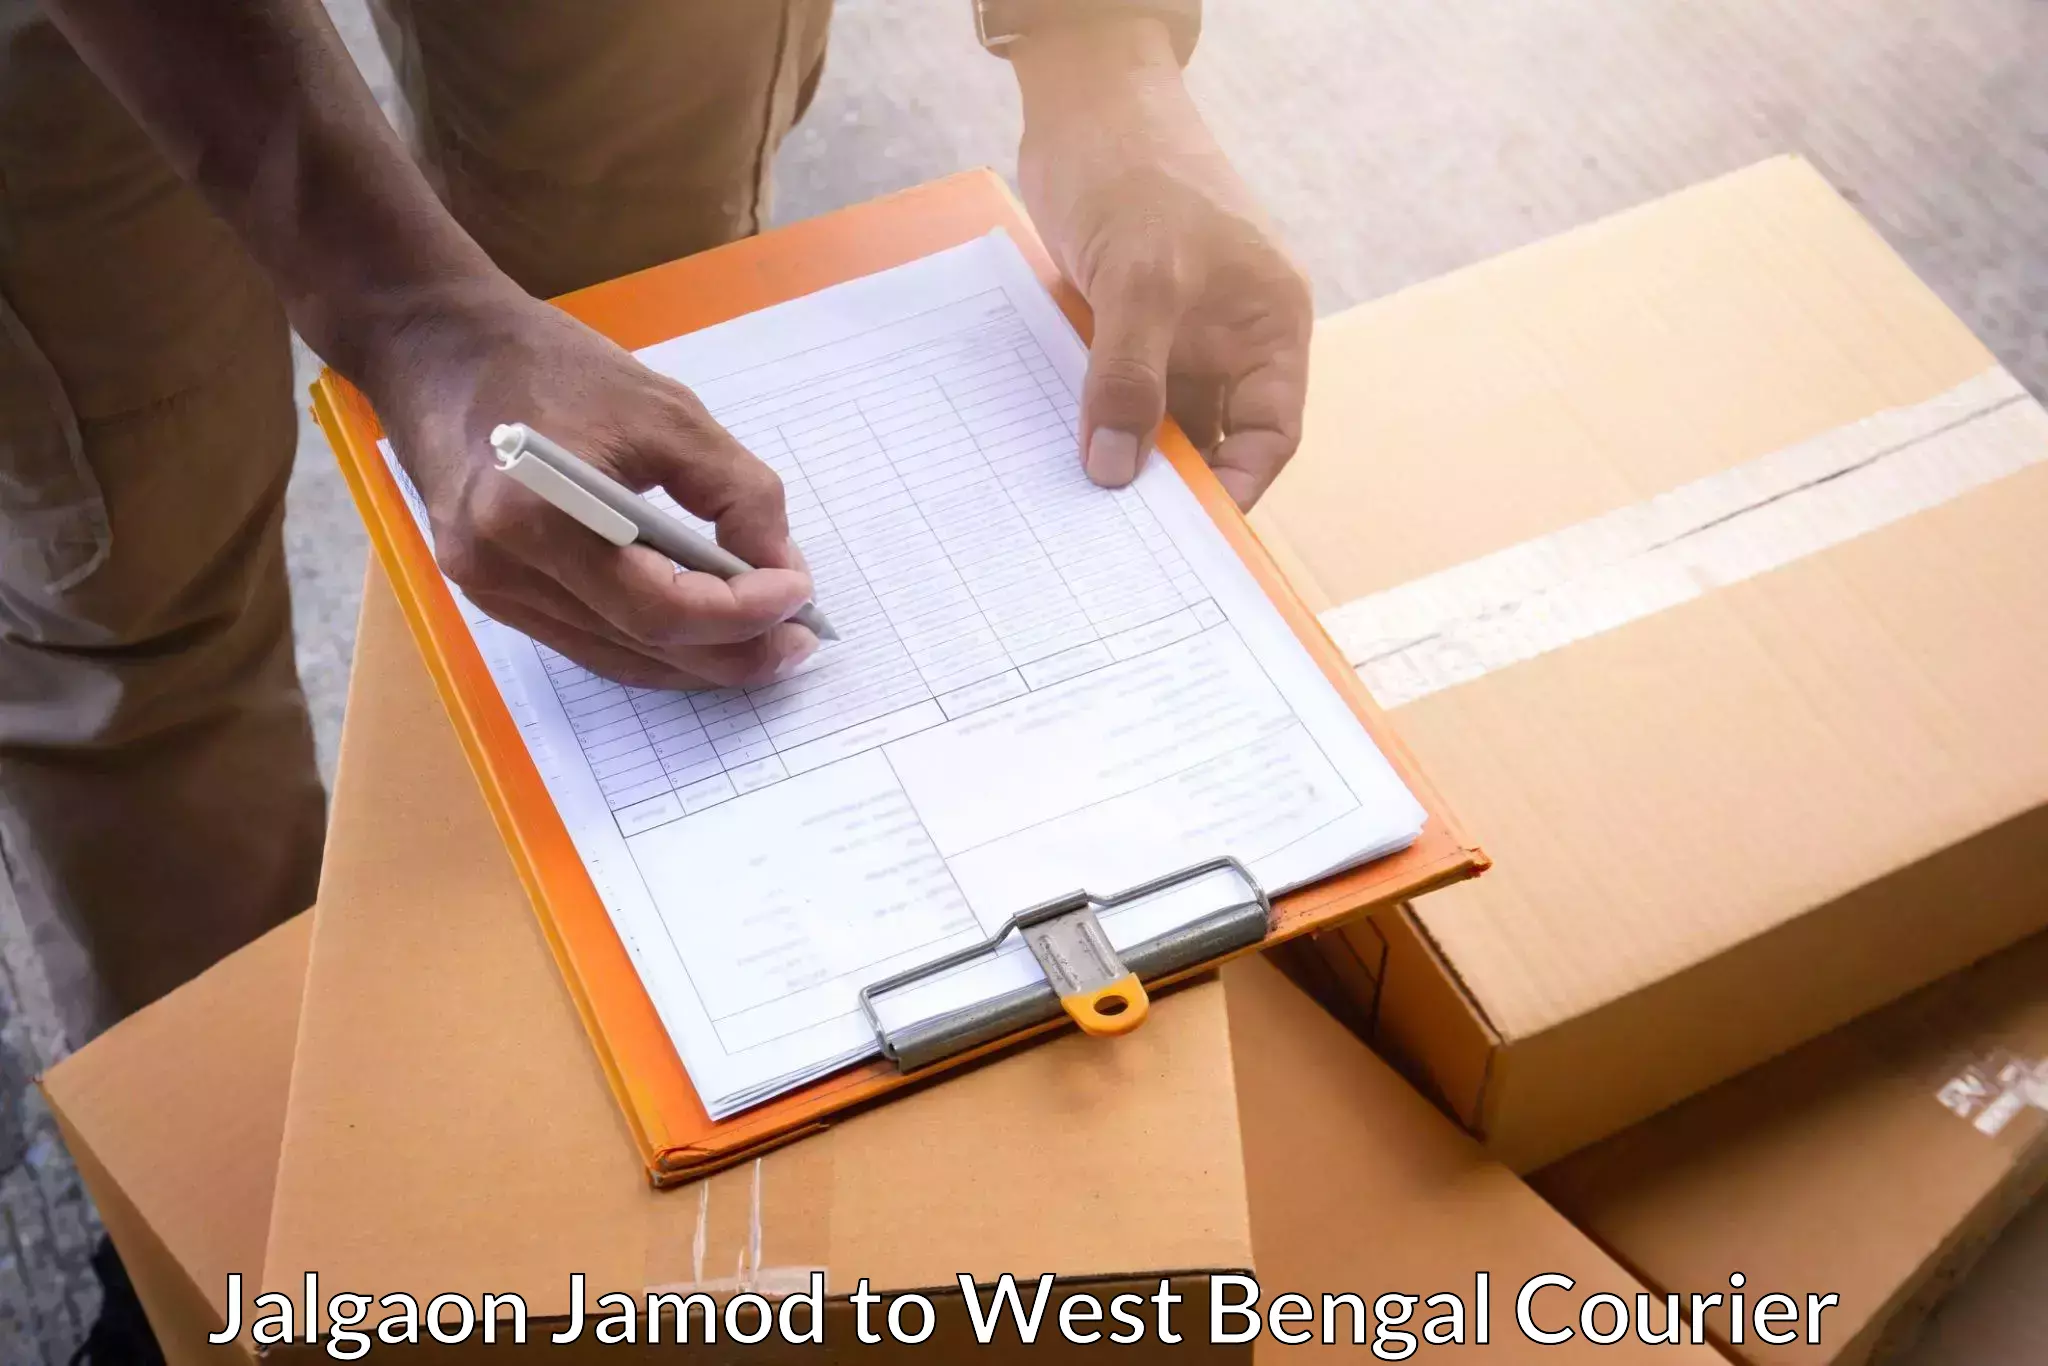 Ground shipping Jalgaon Jamod to West Bengal